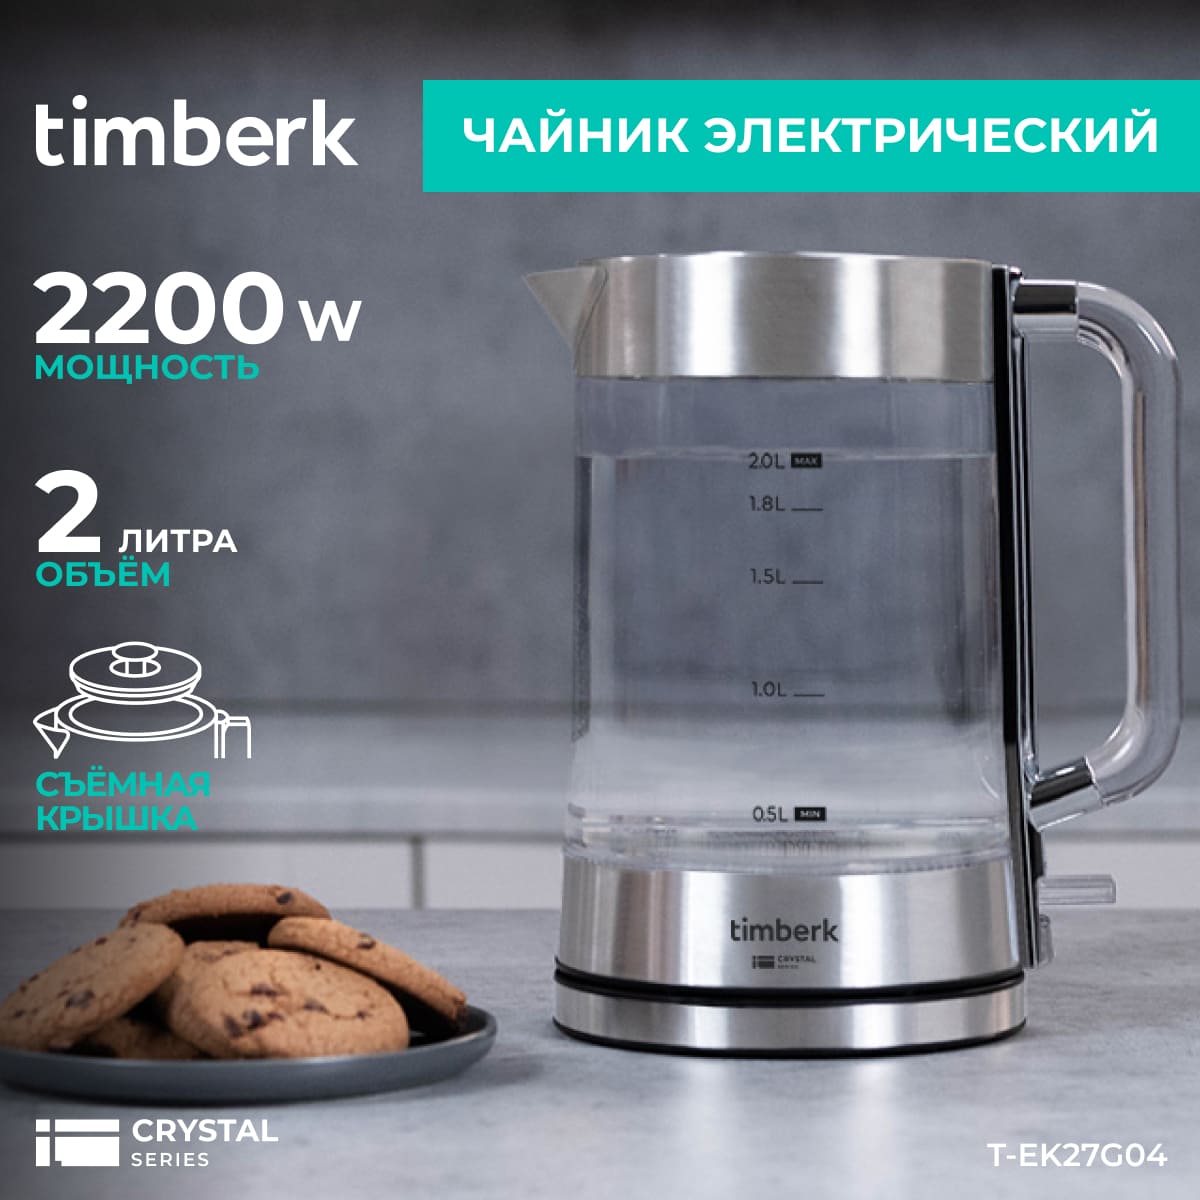 Чайник электрический Timberk T-EK27G04 2 л прозрачный, серебристый, купить в Москве, цены в интернет-магазинах на Мегамаркет